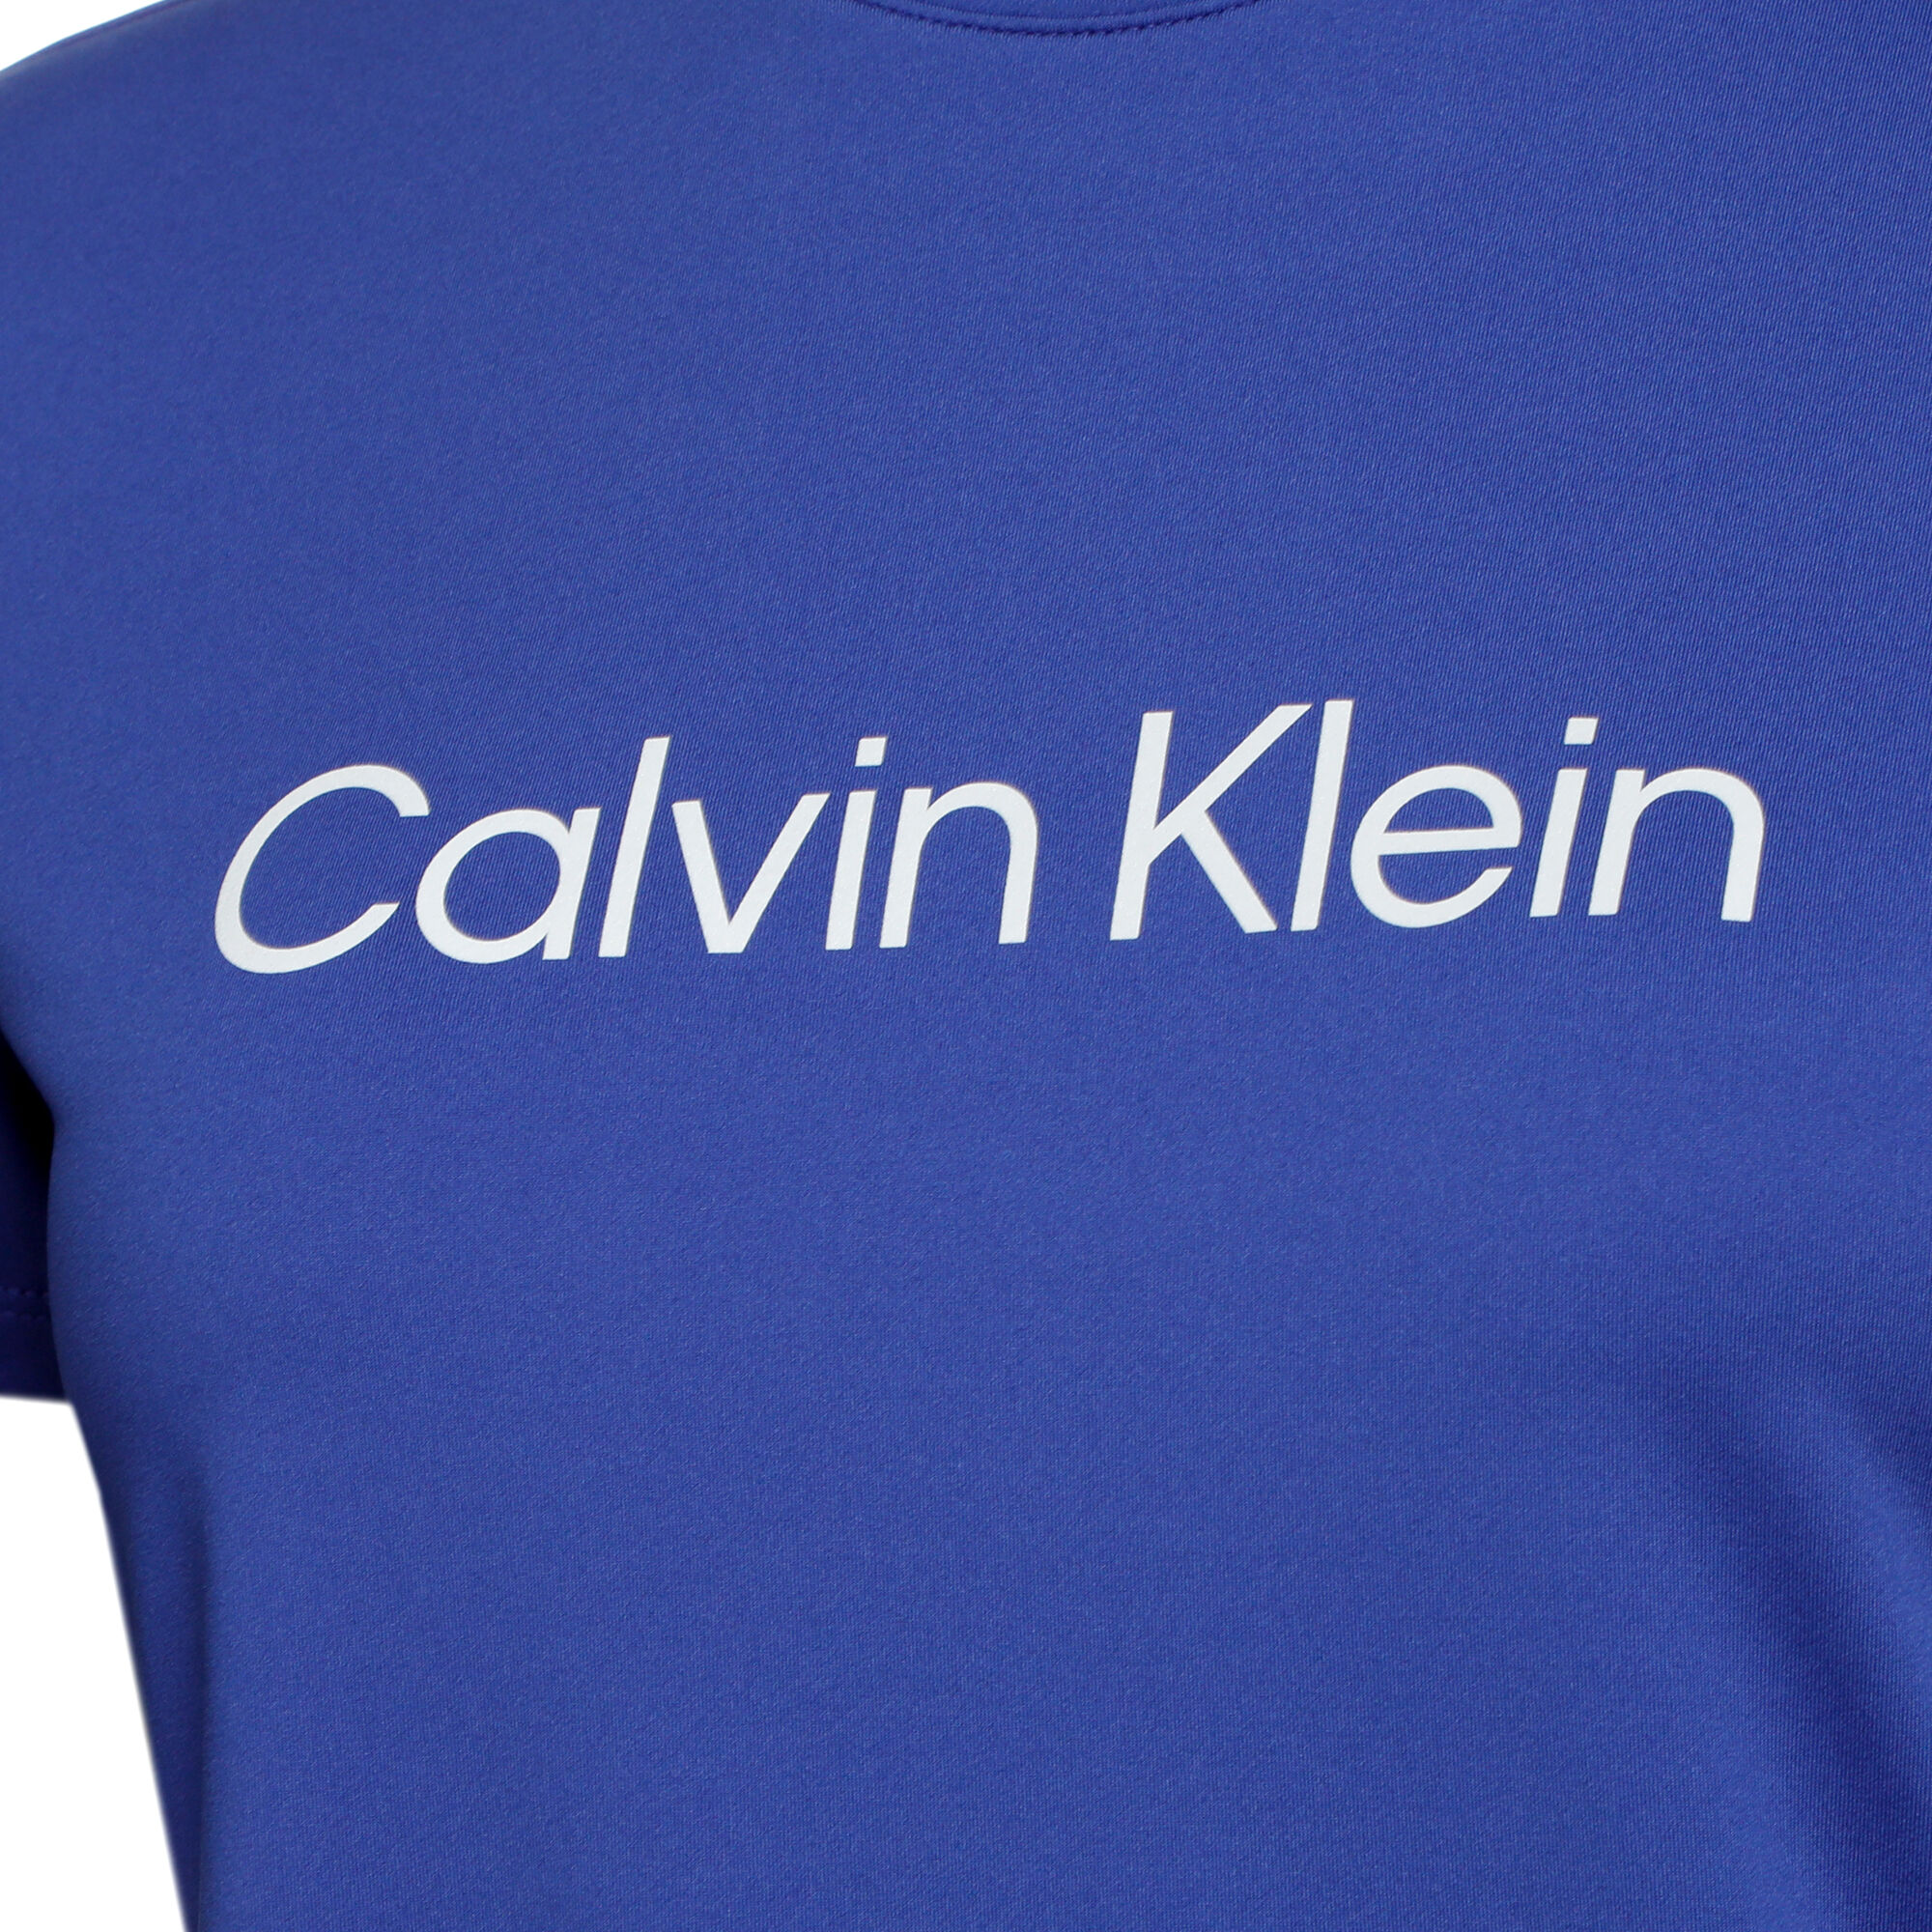 Lighed sovjetisk slack Calvin Klein T-shirt Damer - Blå køb online | Tennis-Point